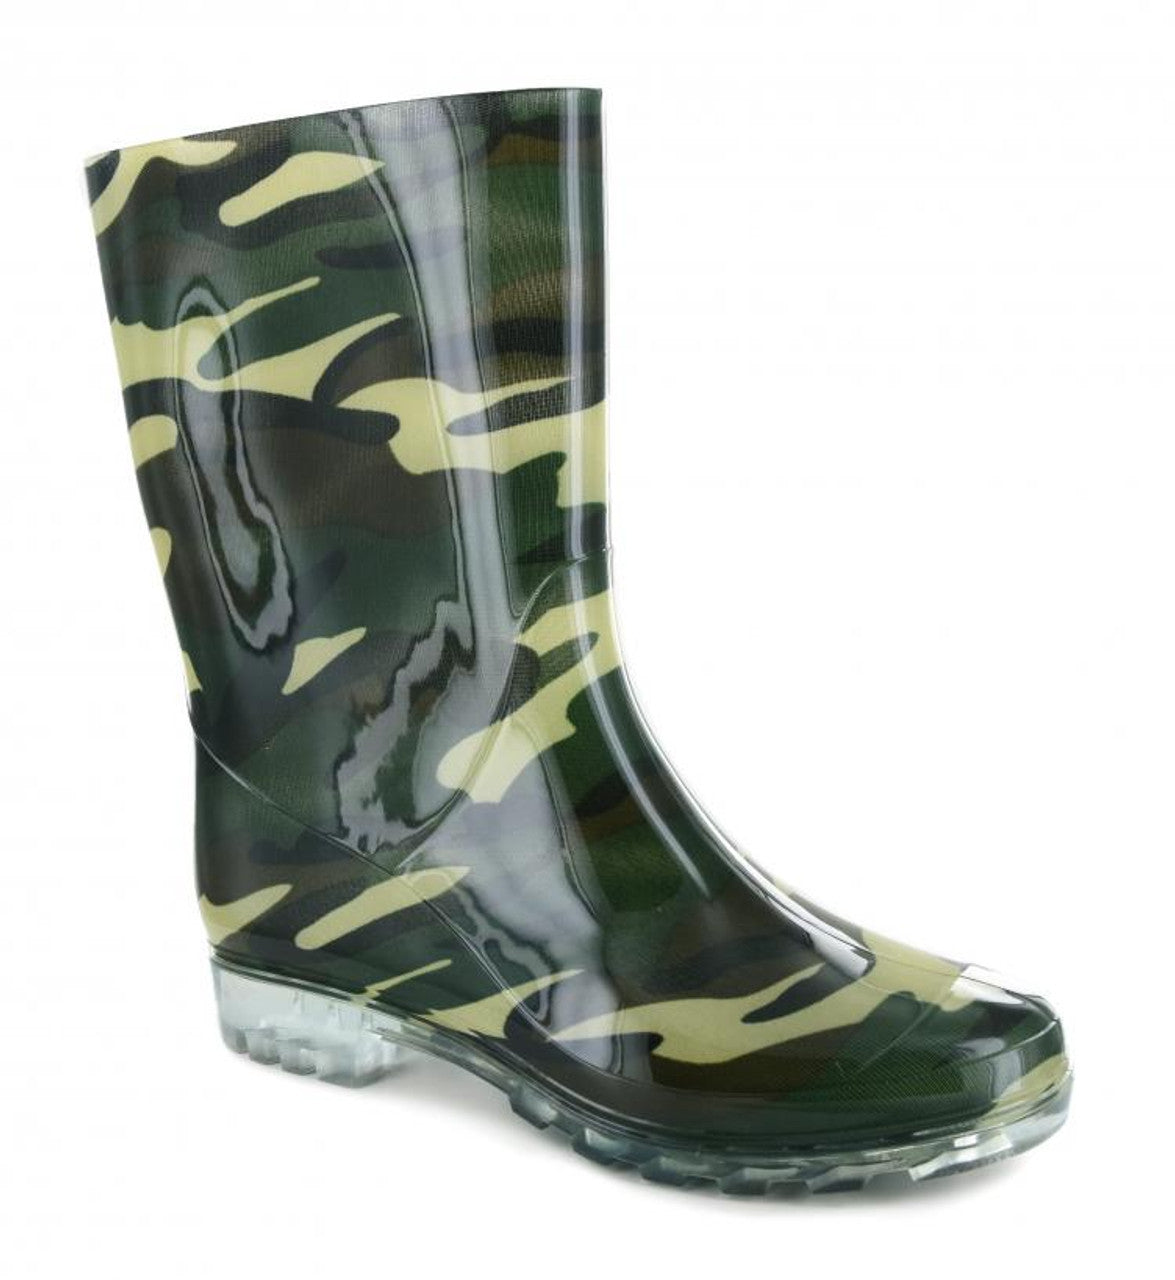 Corkys Riverwalk Rain Boots in Camo